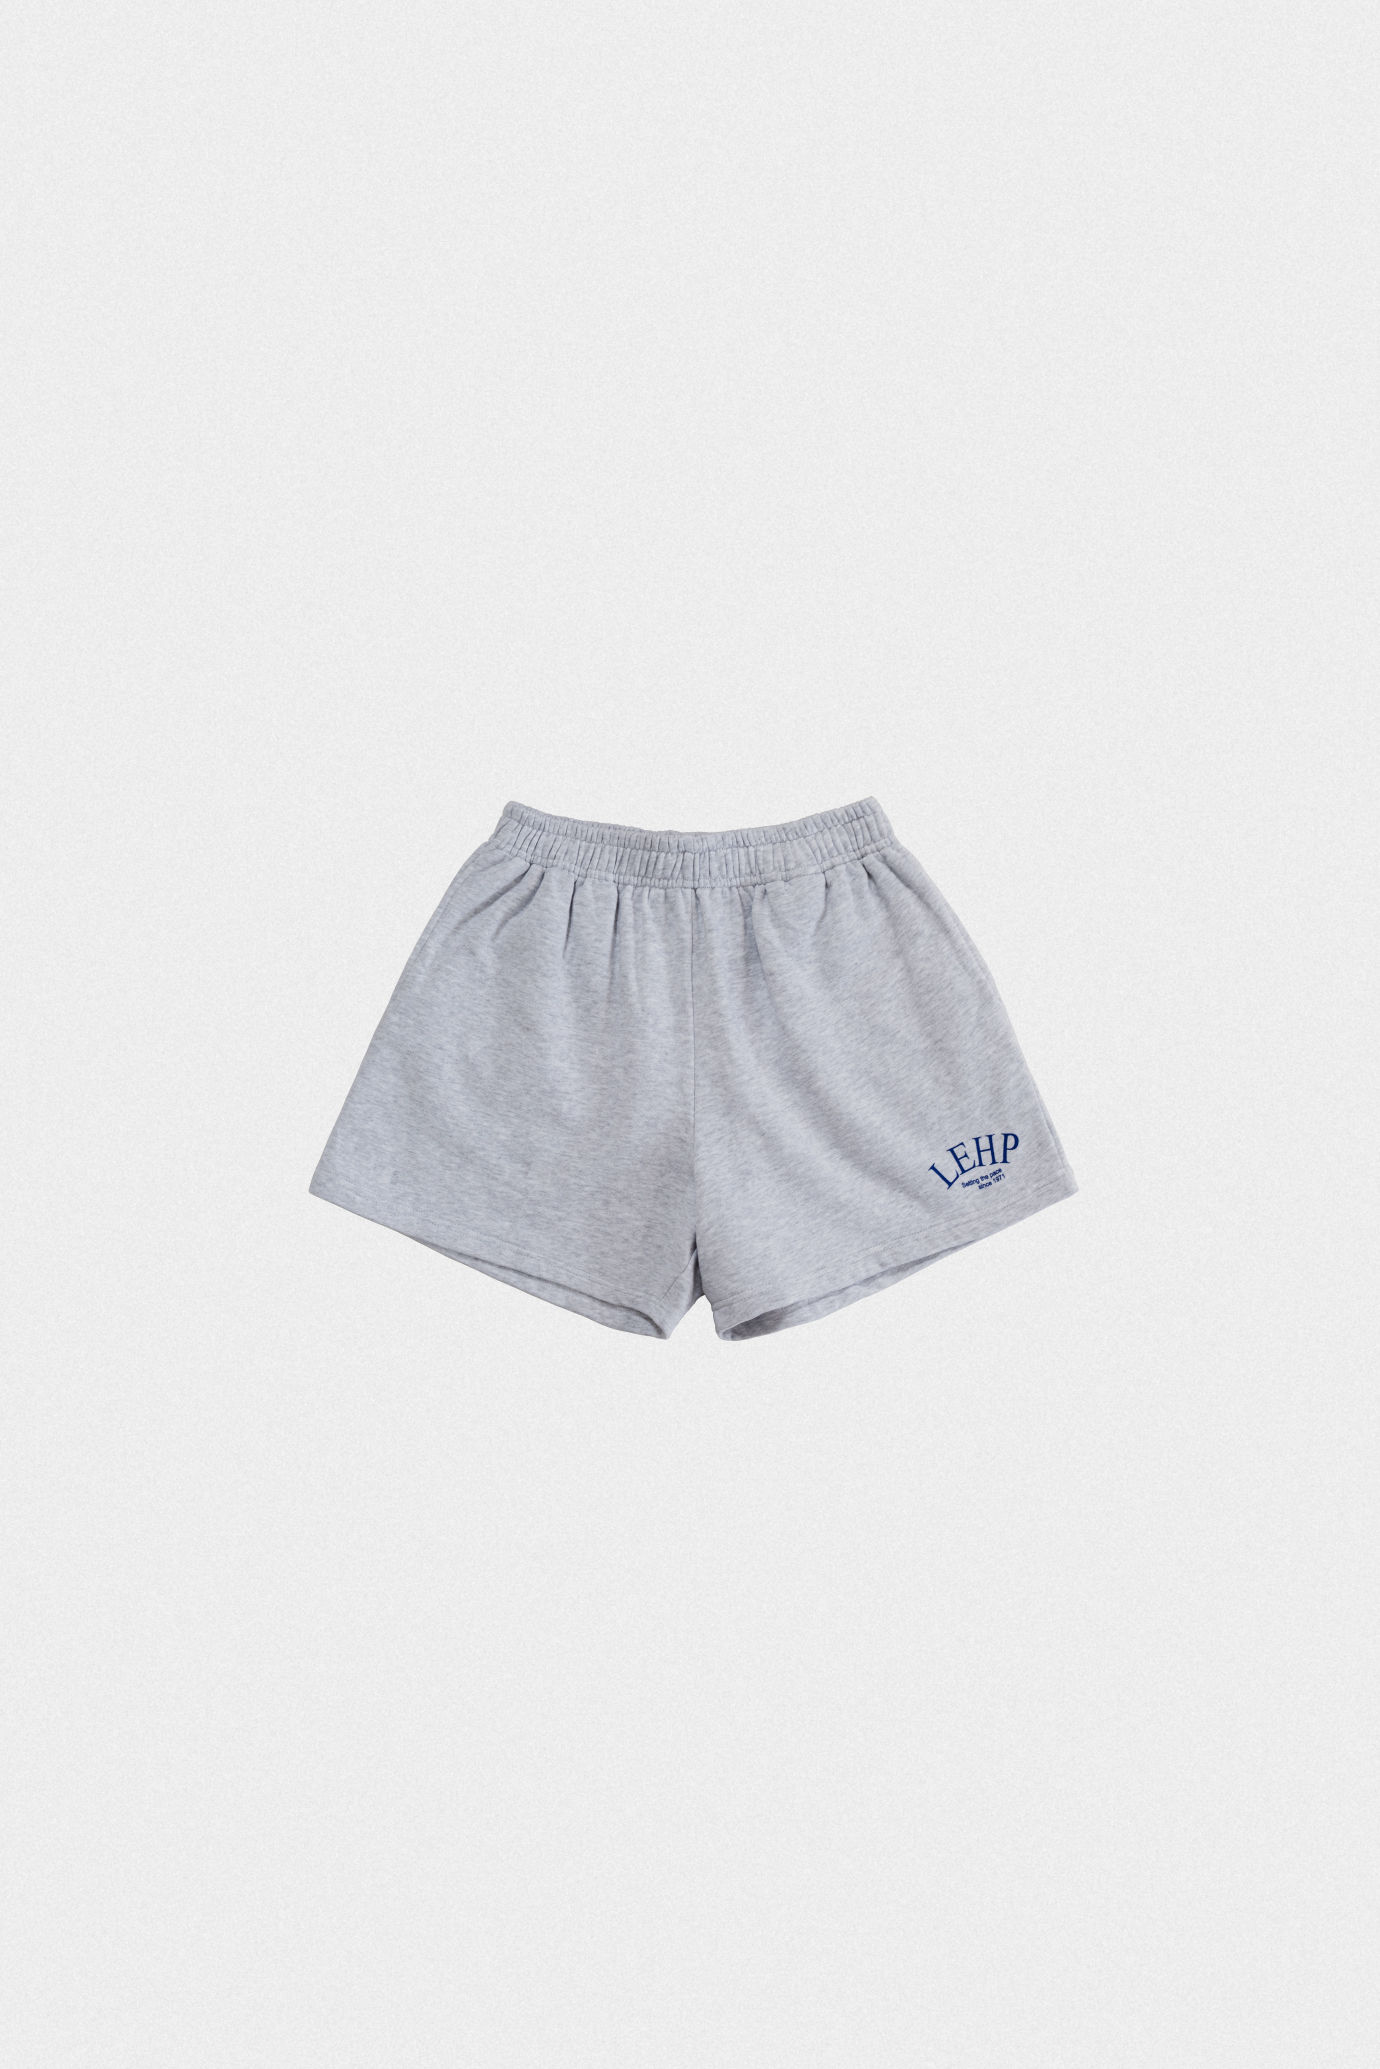 19791_LEHP shorts